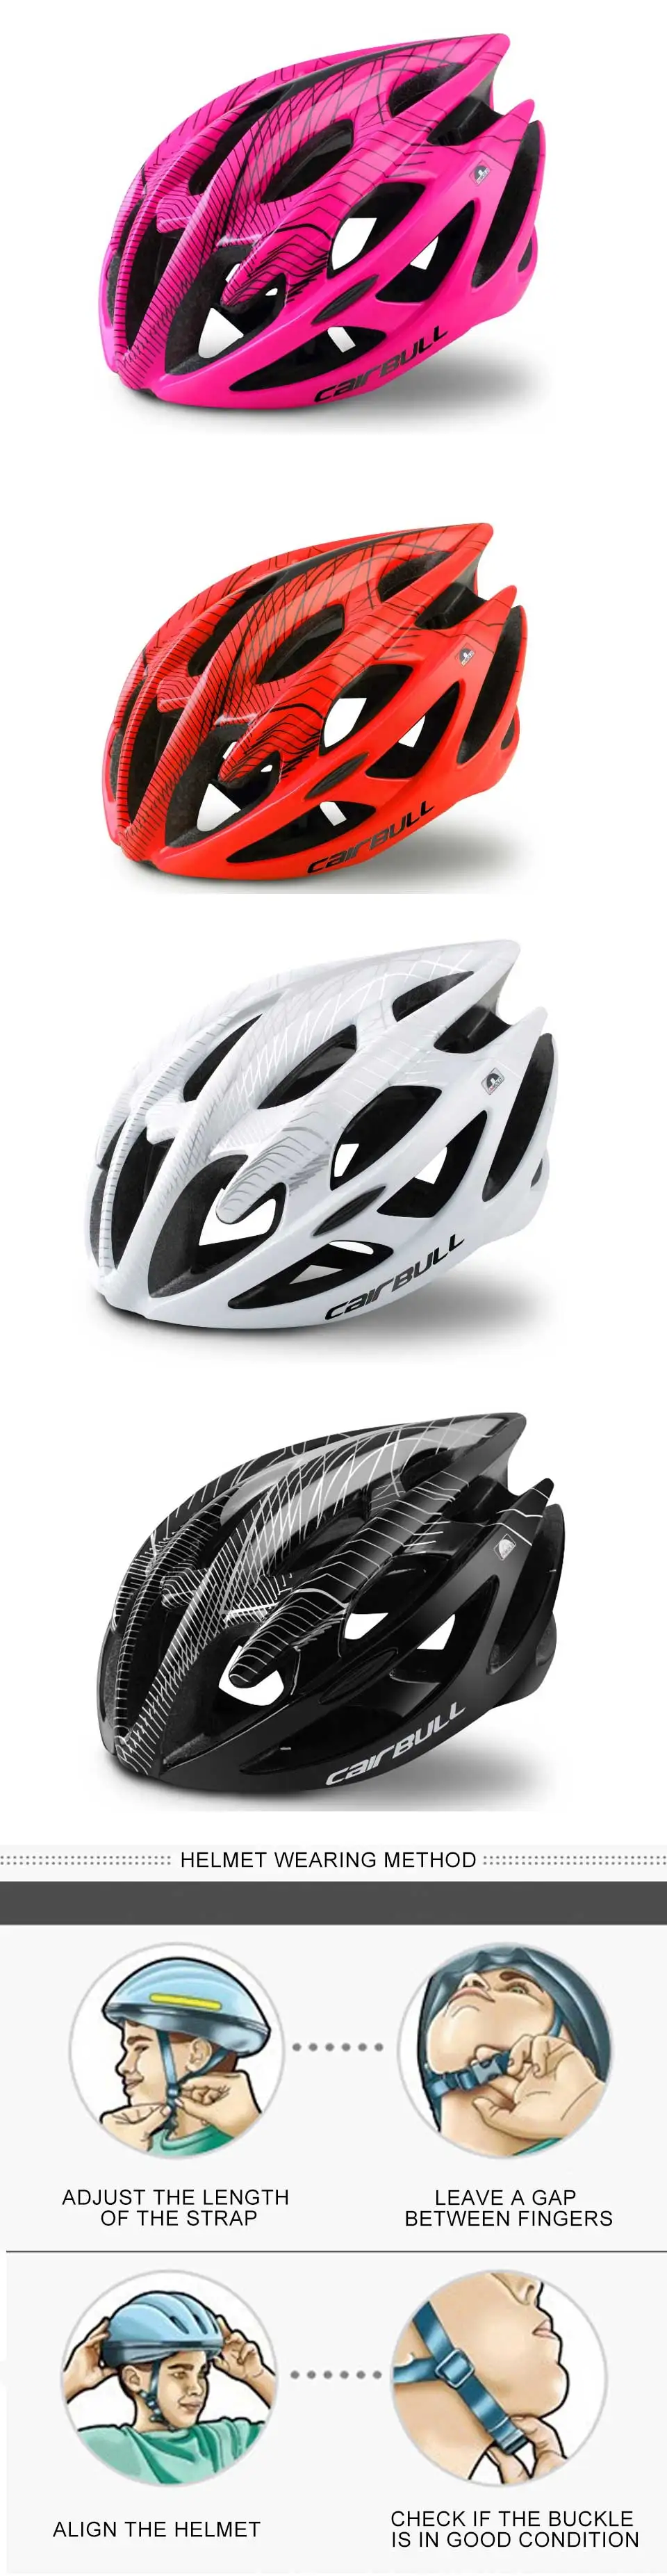 CAIRBULL велосипедный шлем супер светильник вентиляционные отверстия ультра-светильник дышащий MTB дорожный велосипедный Детский защитный шлем